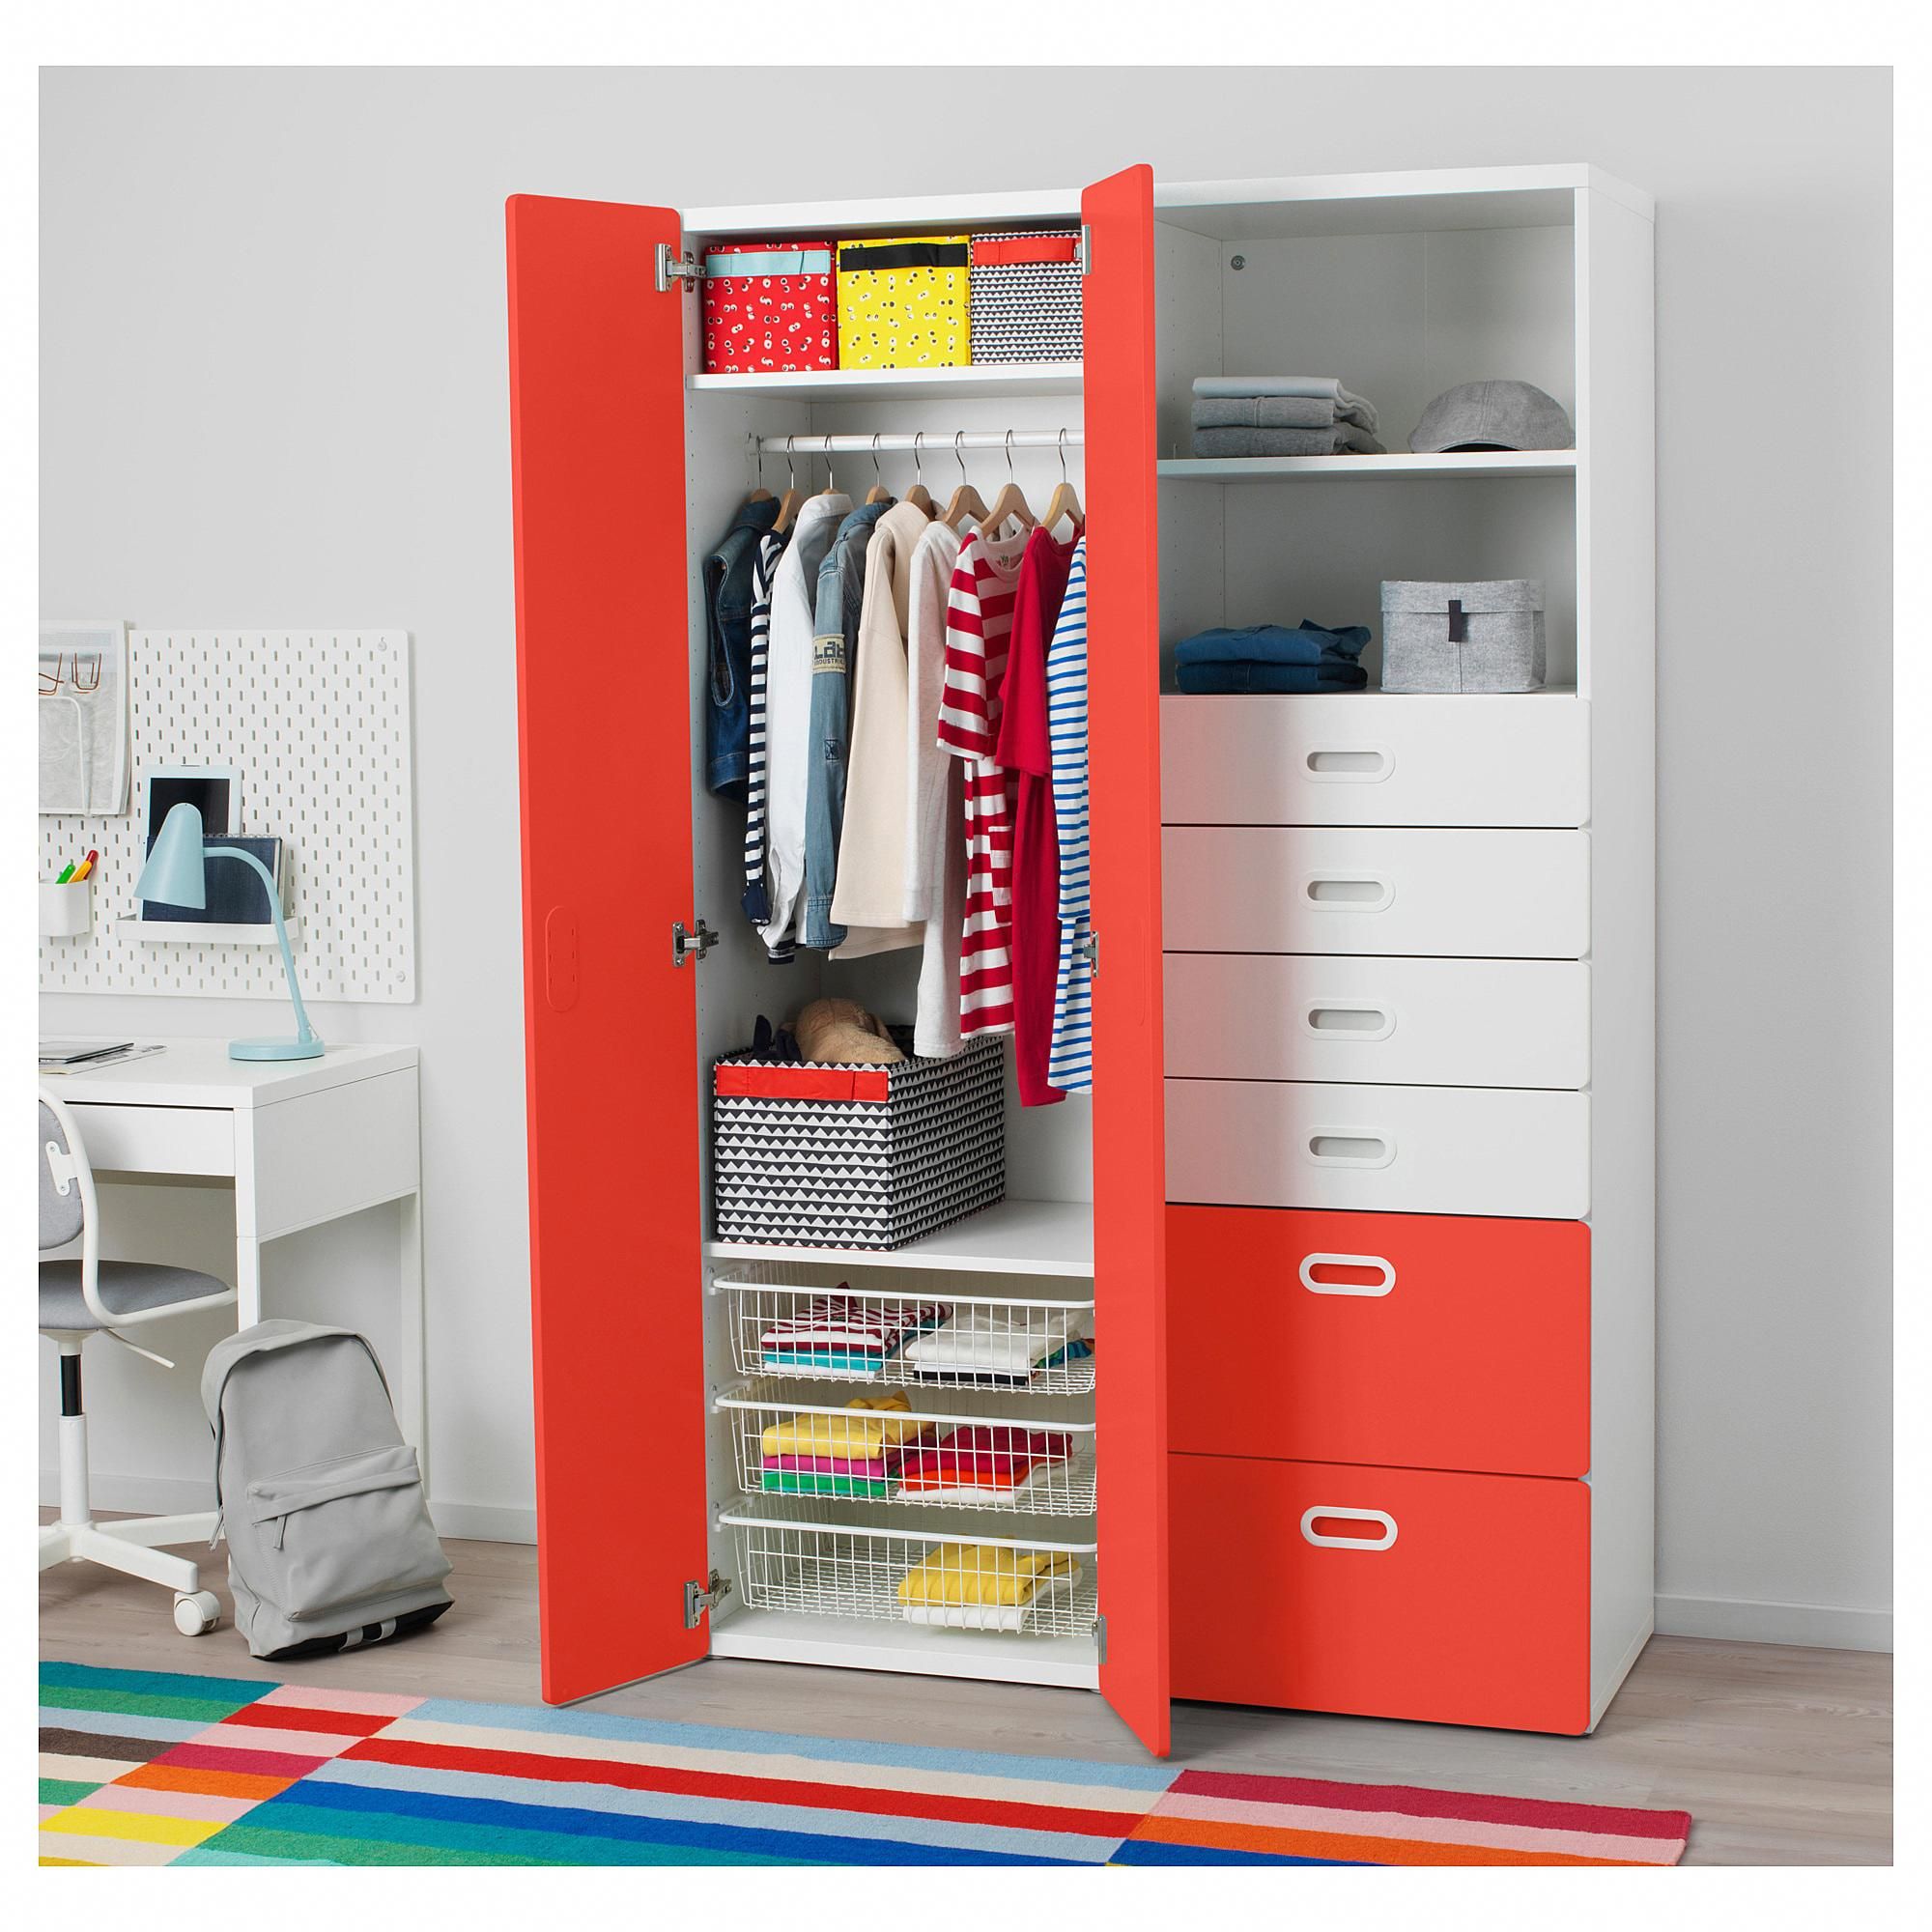 Шкаф в детской комнате: как не ошибиться с выбором? 205+ (фото) дизайна с вариантами (шкаф купе, угловые, встроенные)